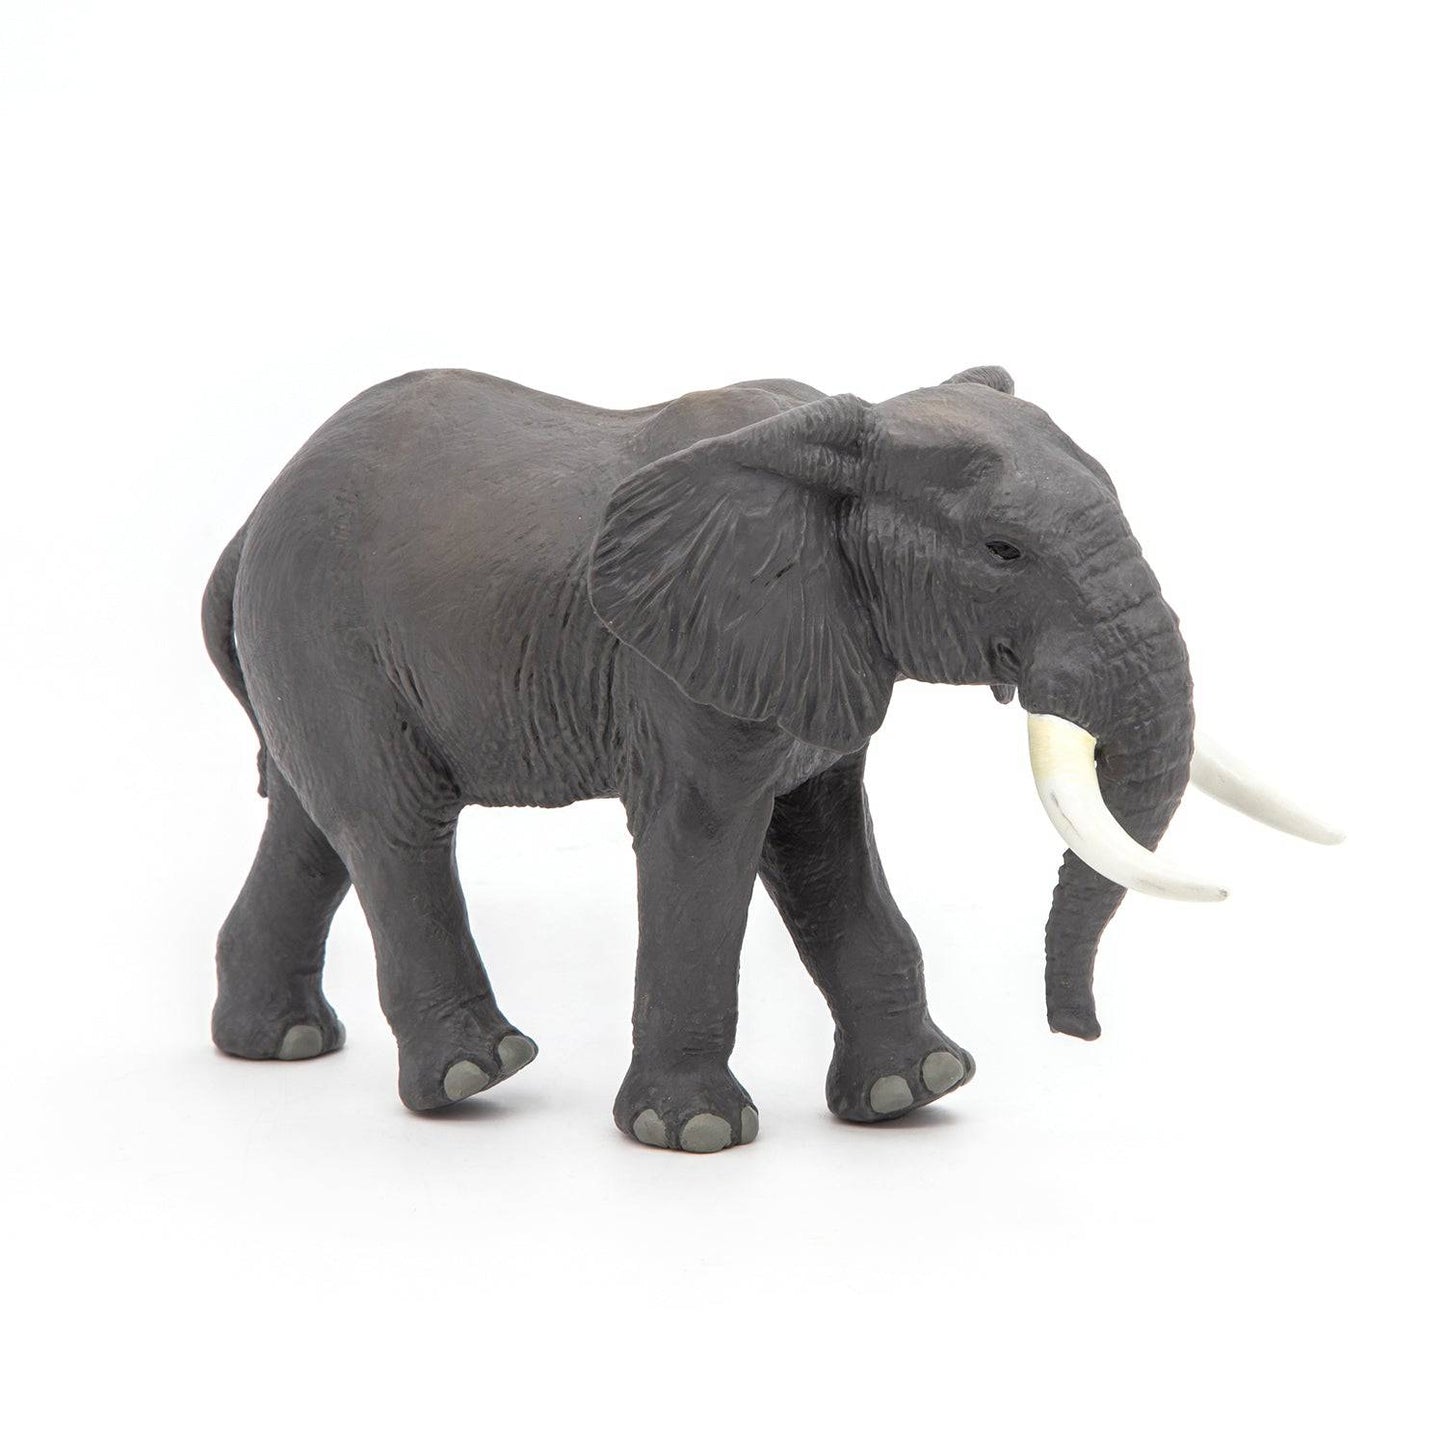 Figurine éléphant d’Afrique Papo France - Maison Continuum